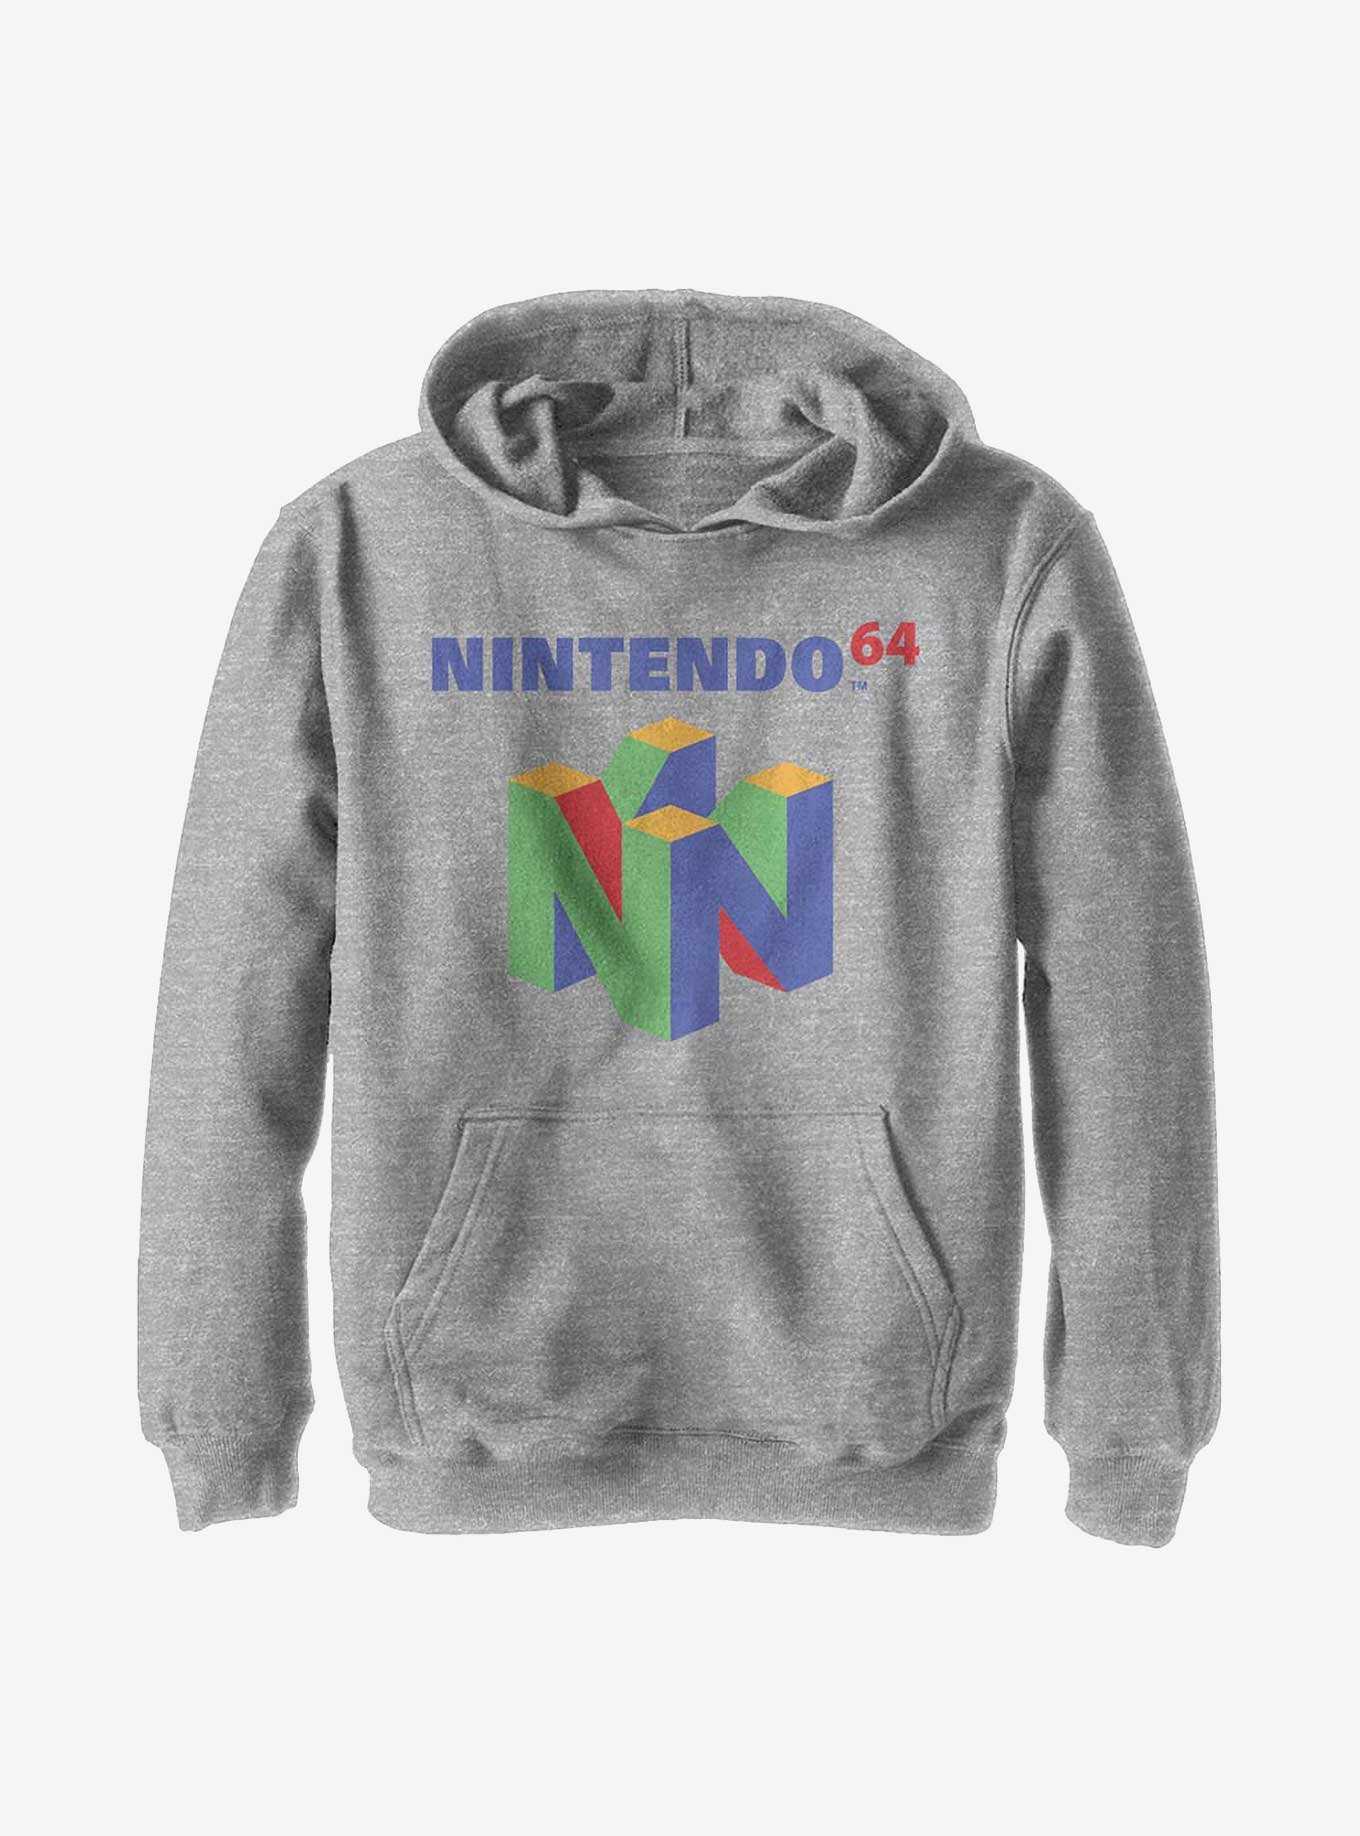 Nintendo N64 Logo Youth Hoodie, , hi-res